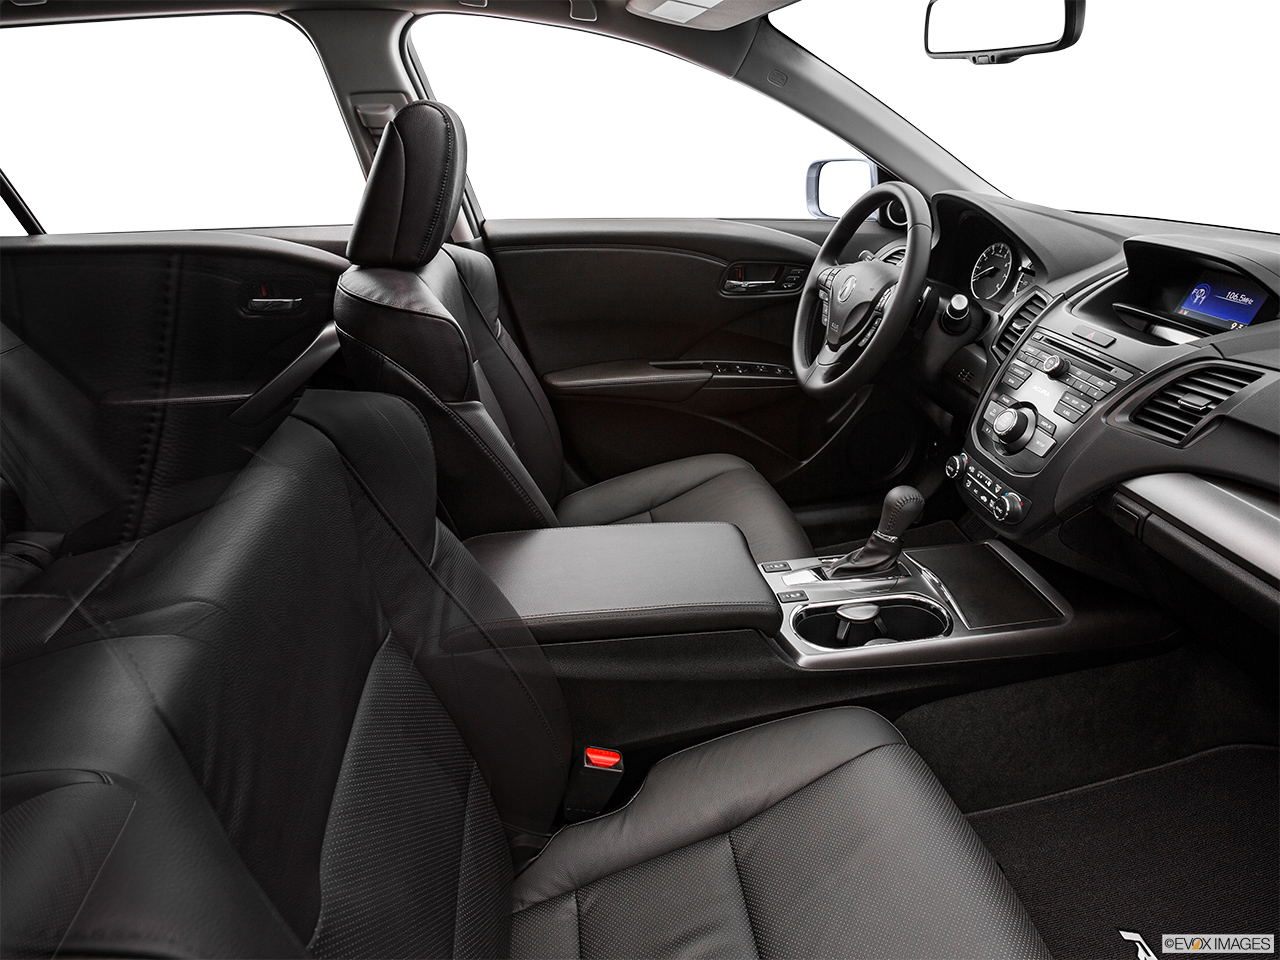 2015 Acura RDX AWD Fake Buck Shot - Interior from Passenger B pillar. 